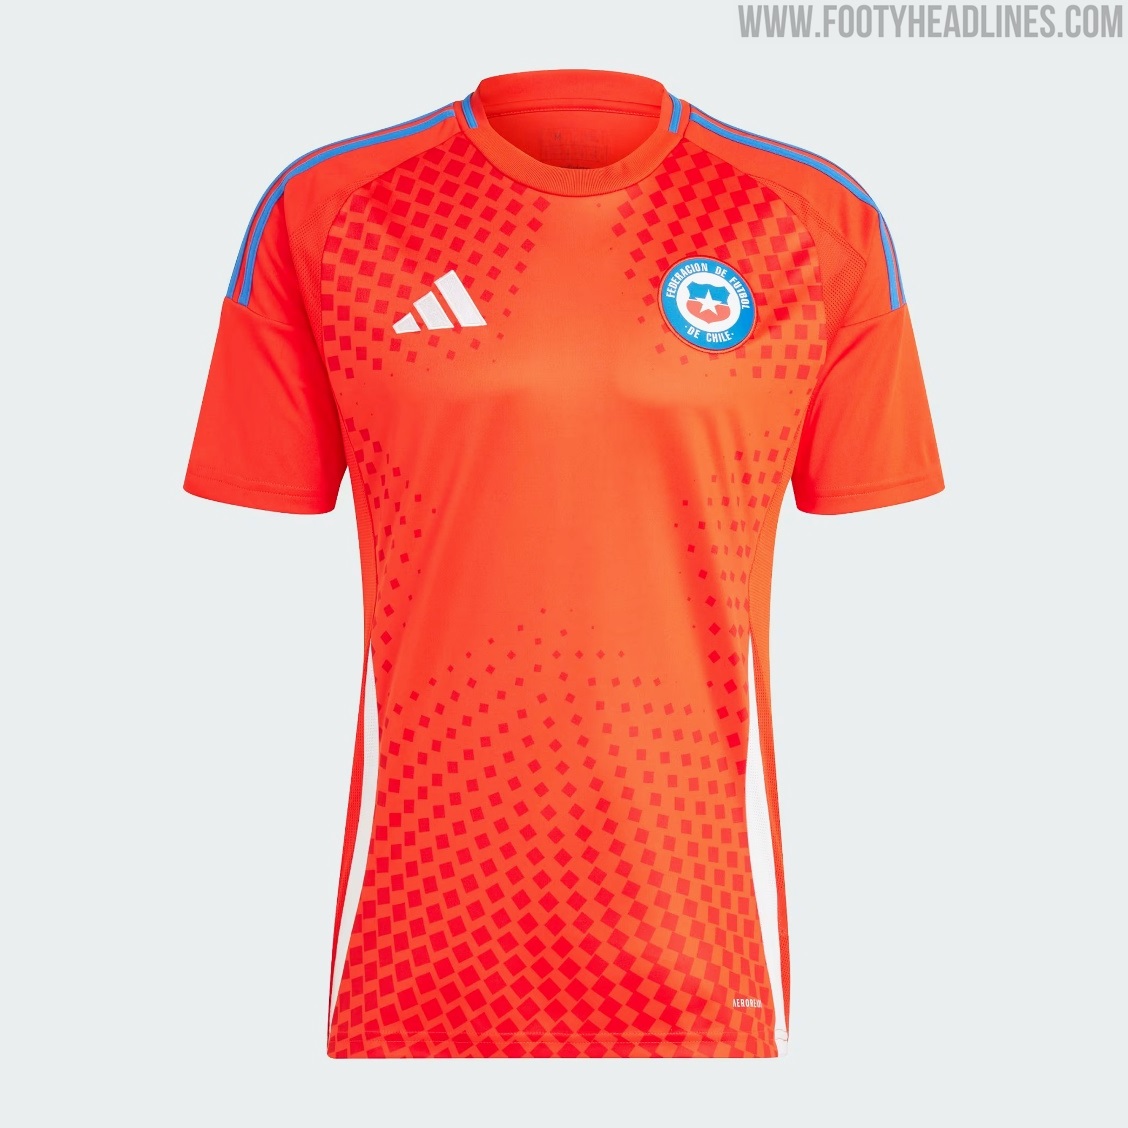 Chile - Copa America home jersey